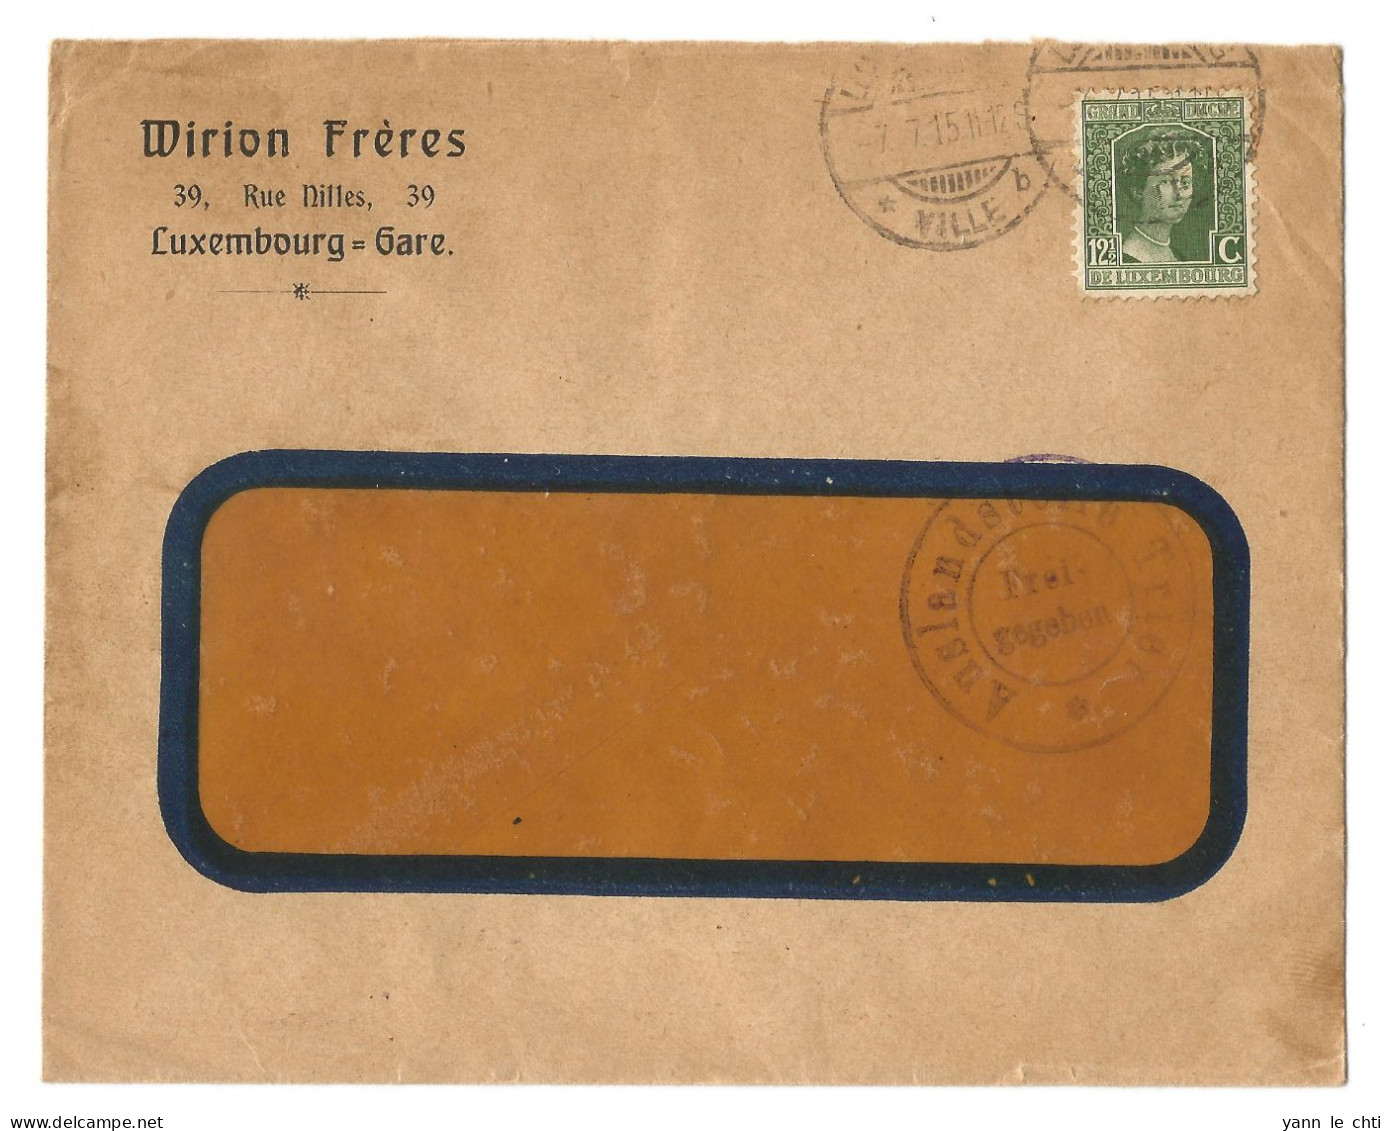 Enveloppe Brief 1915 Wirion Freres Luxembourg Gare 12 1/2 Cents Auslandstelle Trier Frei Gegeben Censure - 1914-24 Marie-Adélaïde